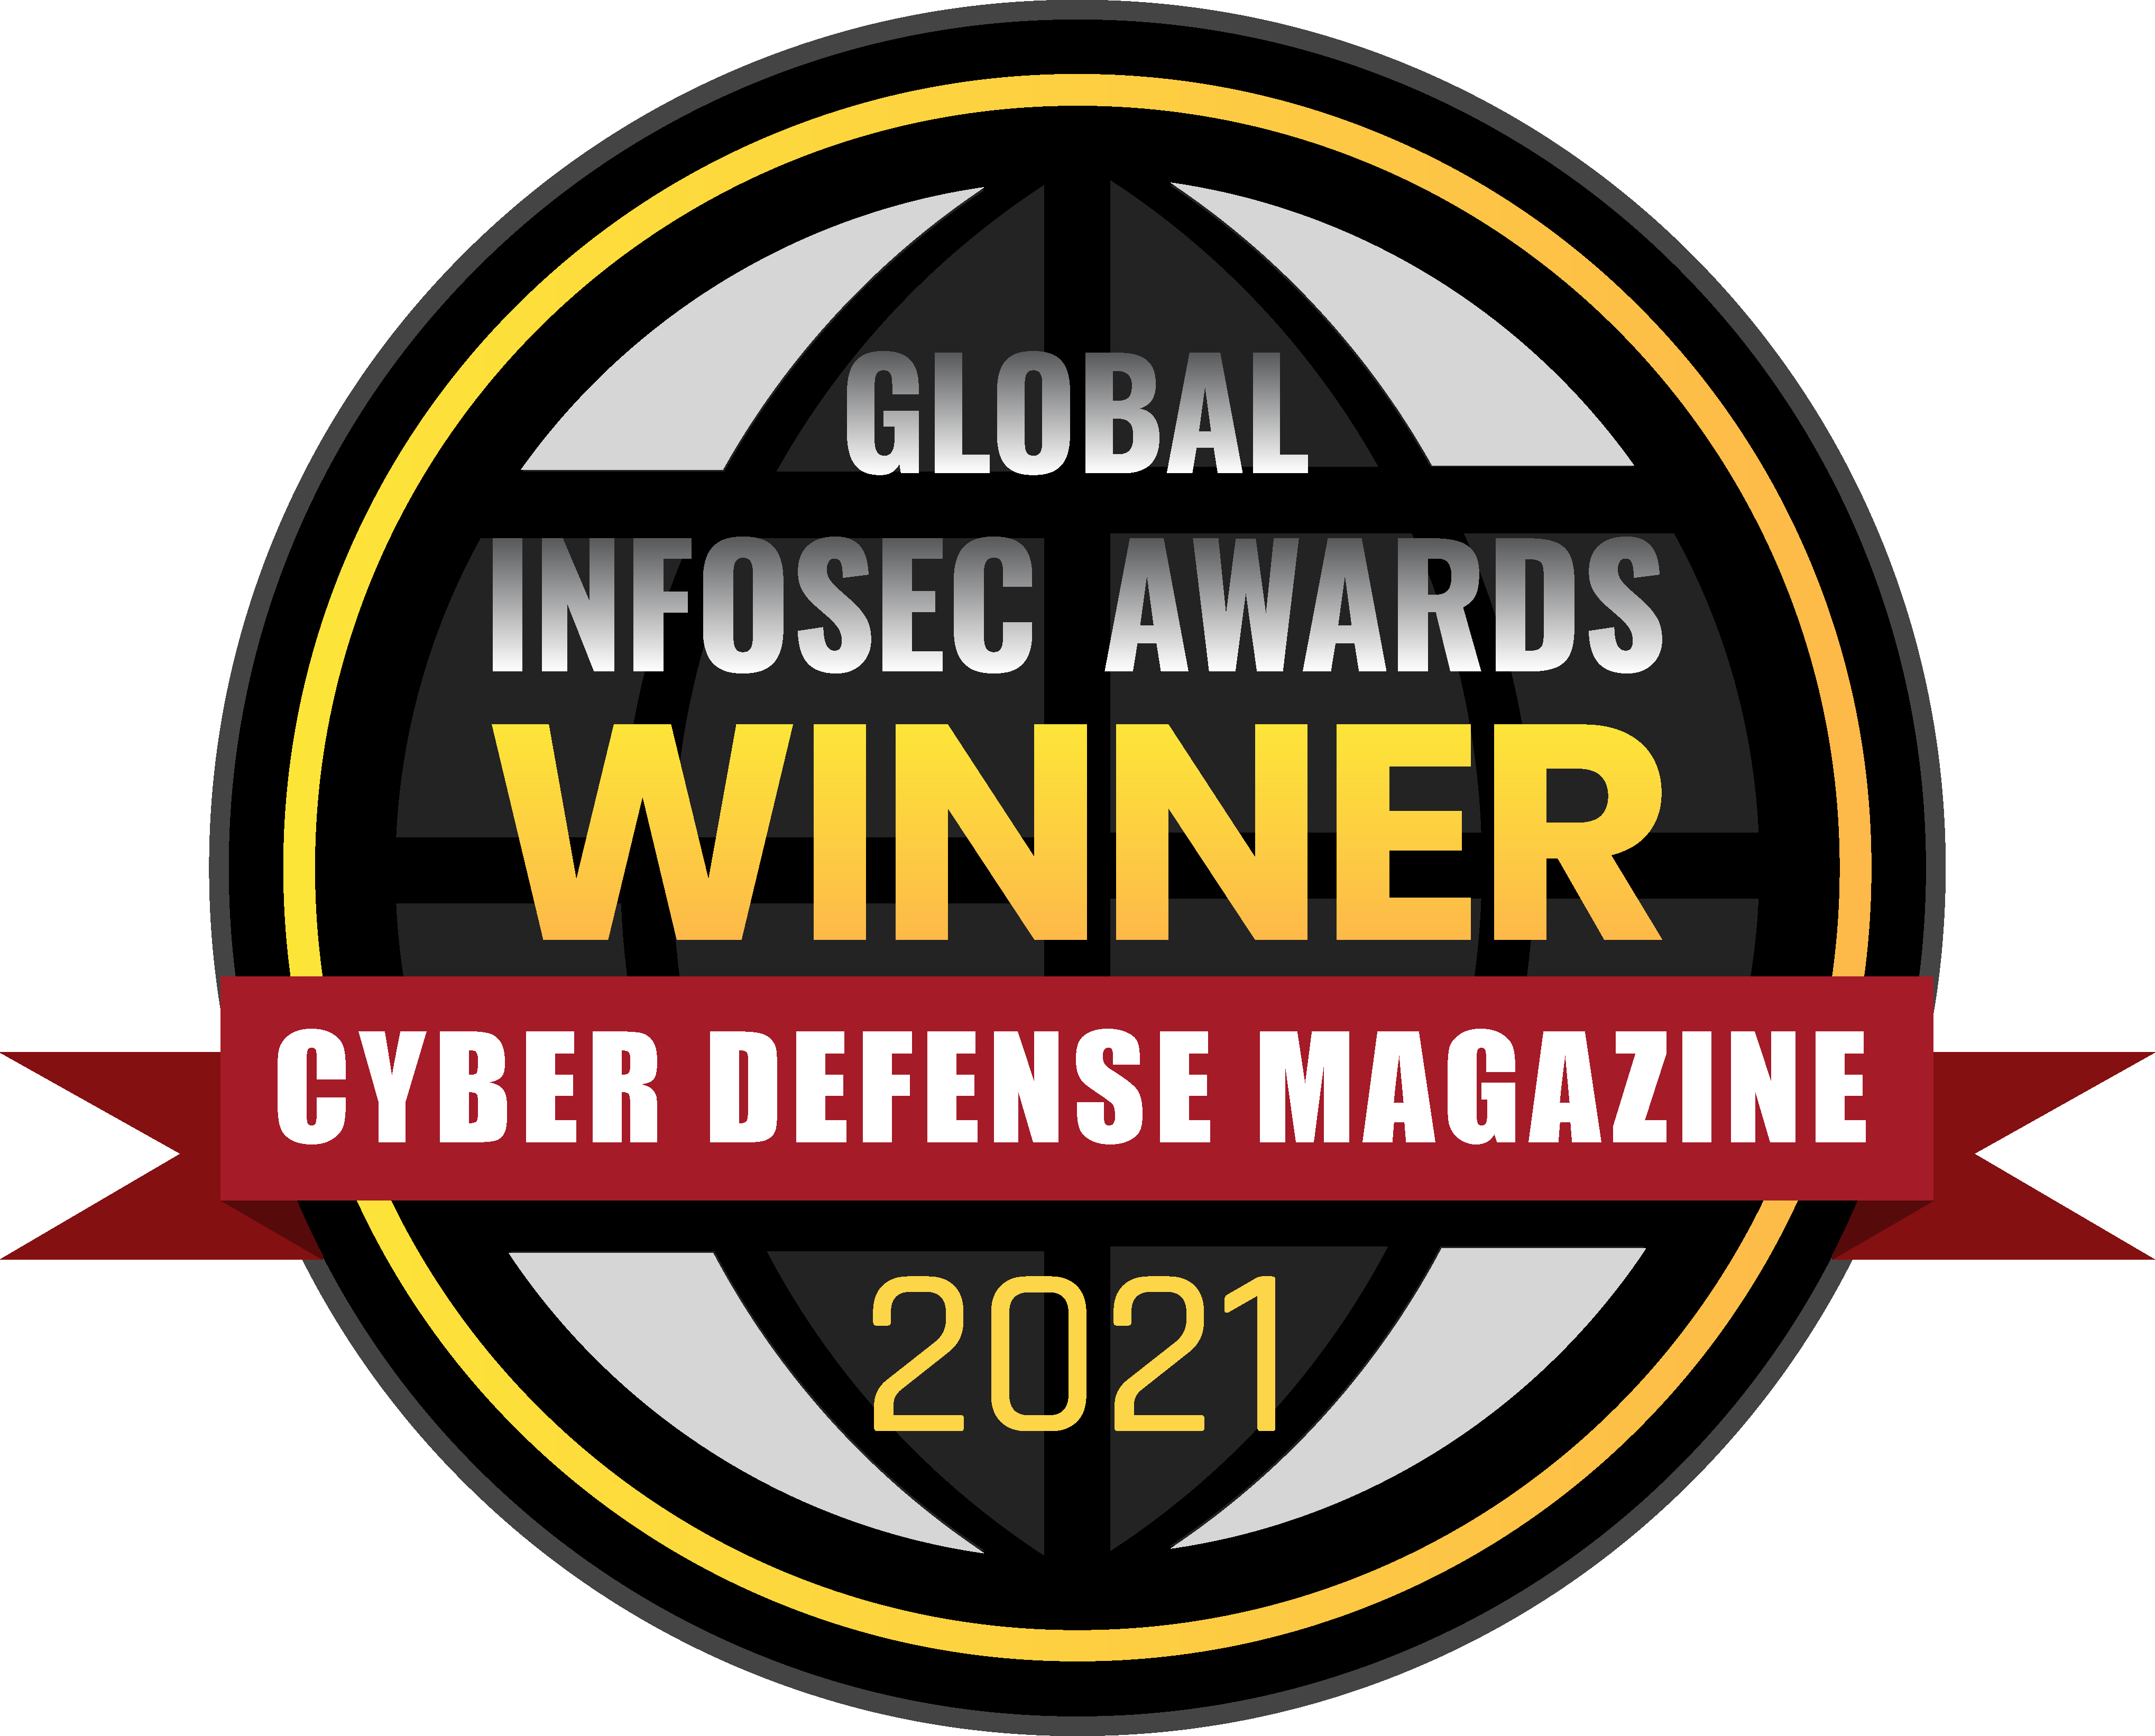 Cyber Defense Magazine Global InfoSec Awards: 2021 Winner